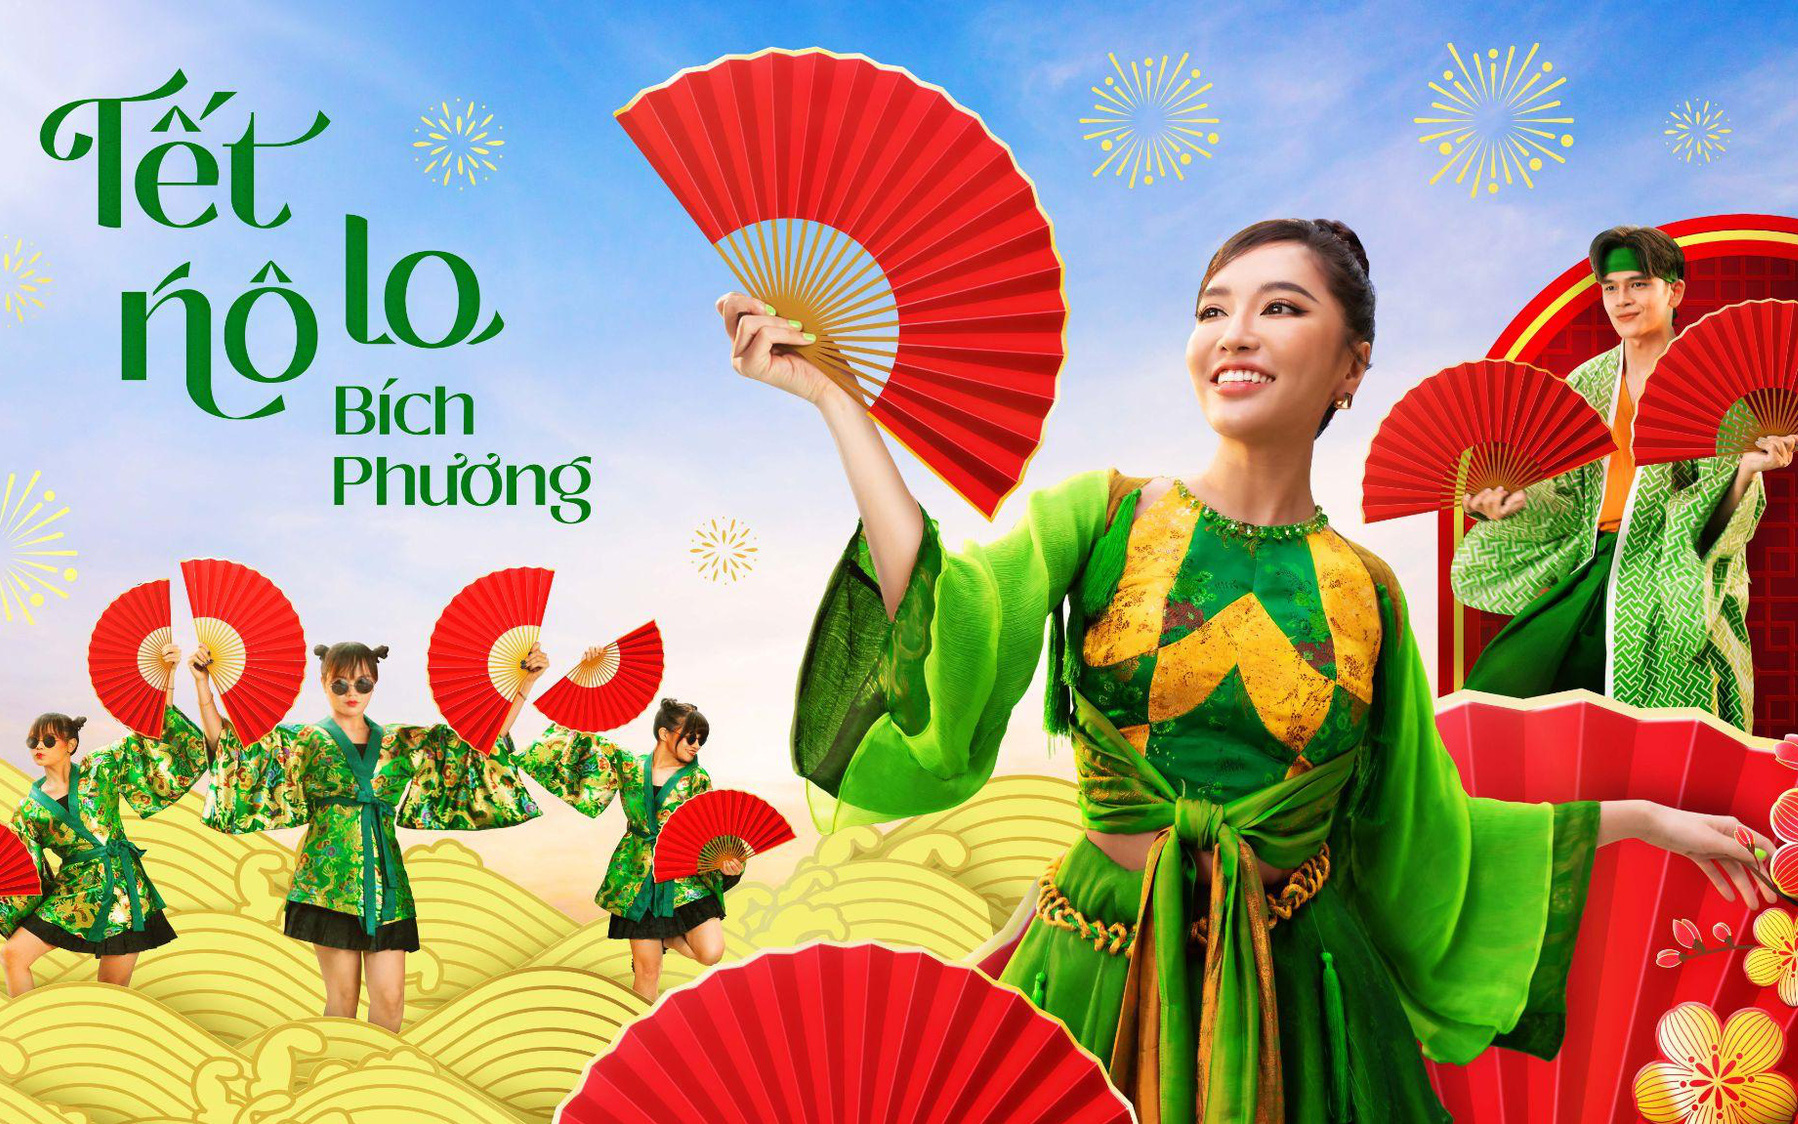 Đại sứ MV Tết gọi tên Bích Phương, năm nào nhạc cũng vui tươi, mang năng lượng tích cực